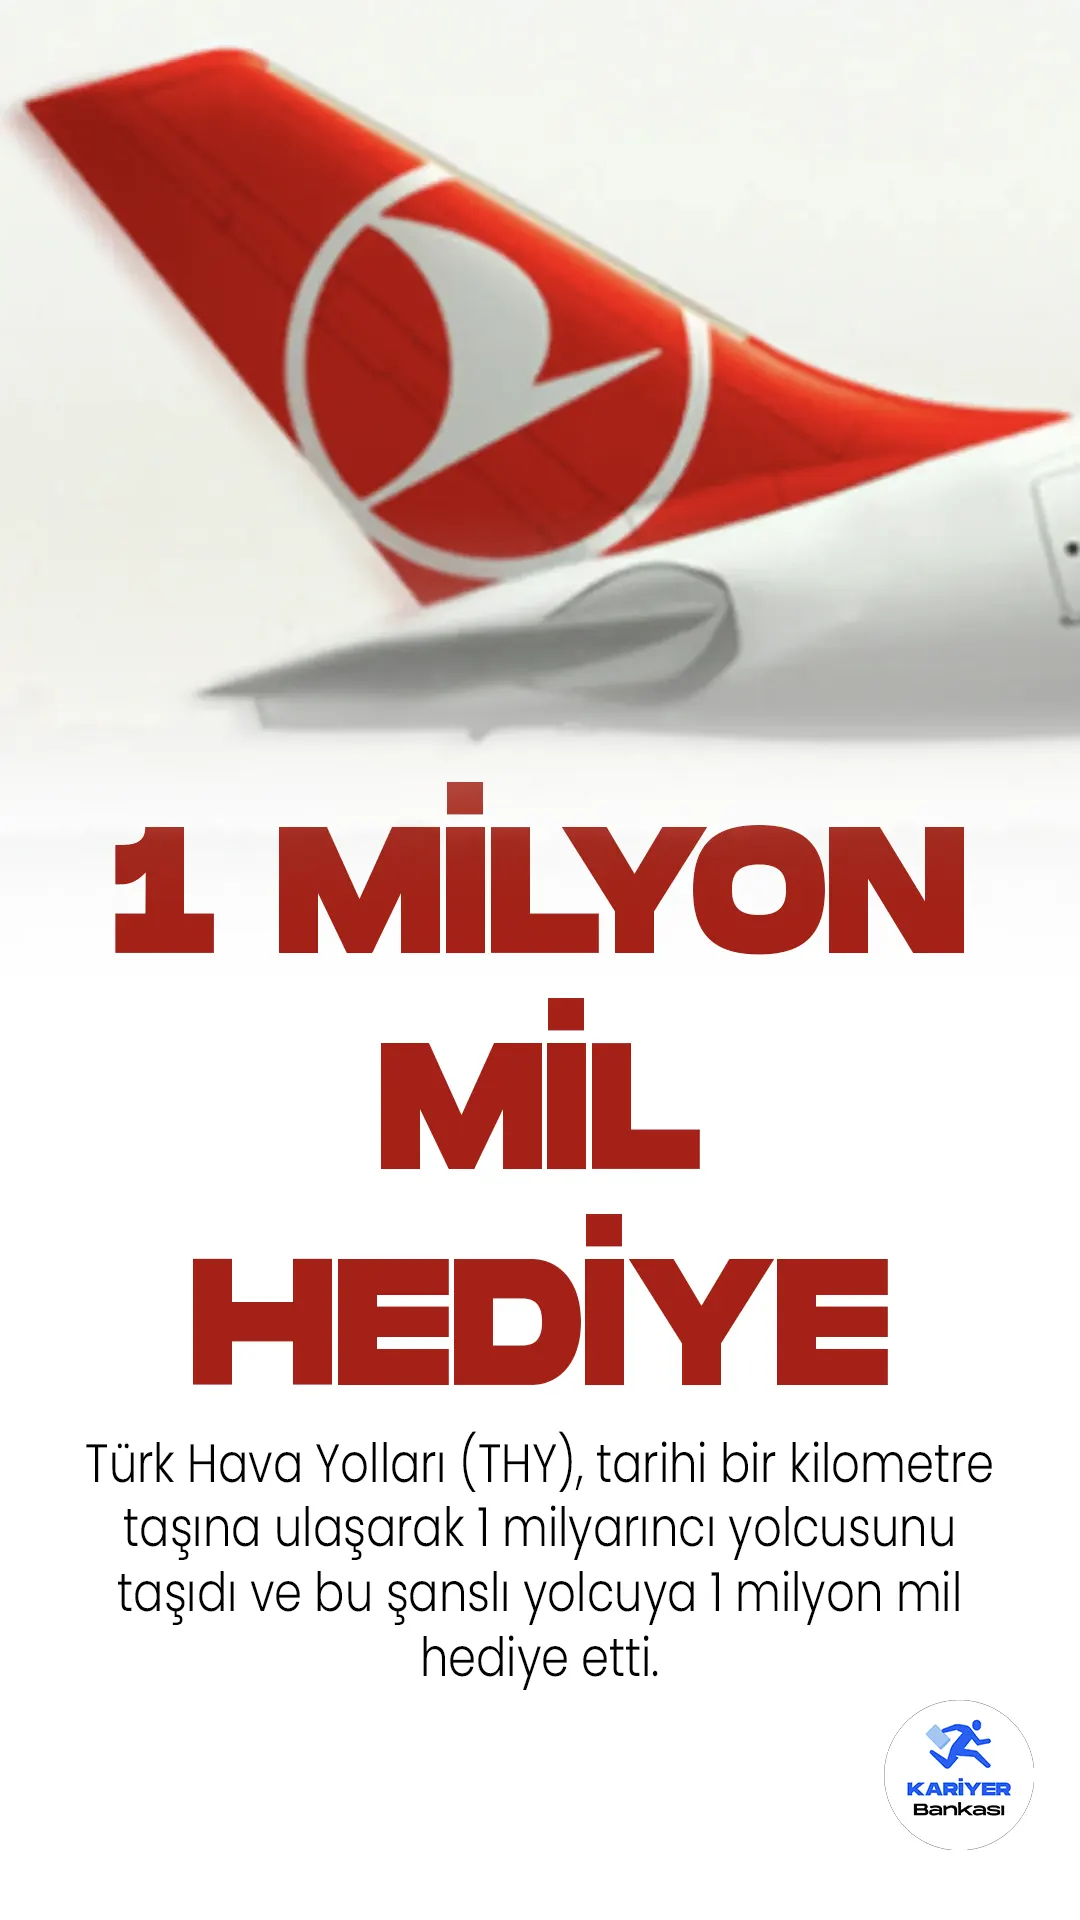 Türk Hava Yolları (THY), tarihi bir kilometre taşına ulaşarak 1 milyarıncı yolcusunu taşıdı ve bu şanslı yolcuya 1 milyon mil hediye etti.